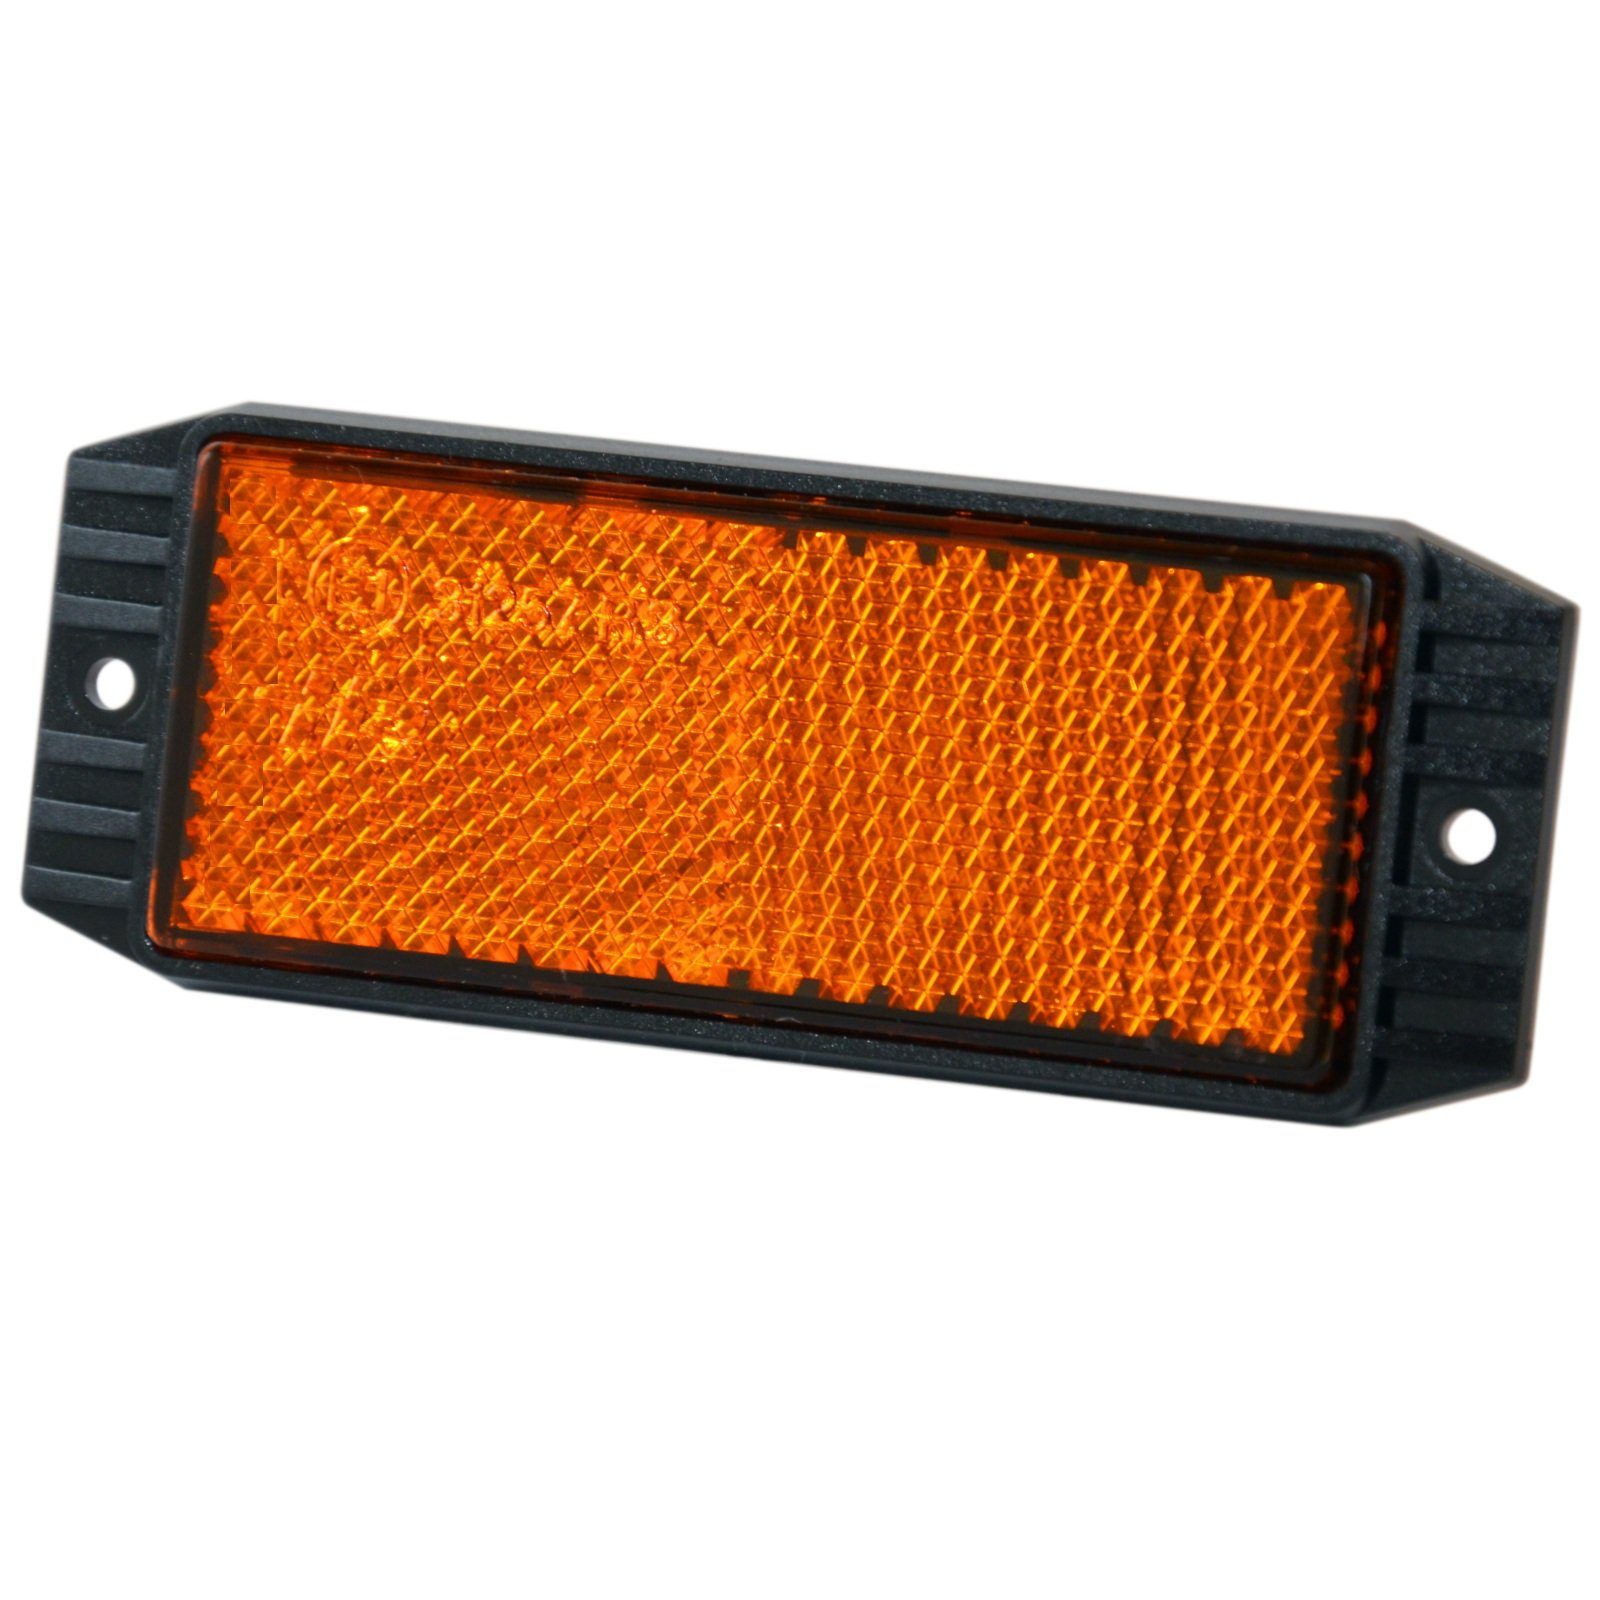 HR Autocomfort Fahrradreflektor Reflektor Katzenauge Rückstrahler 90 x 34 mm orange mit E-Prüfzeichen